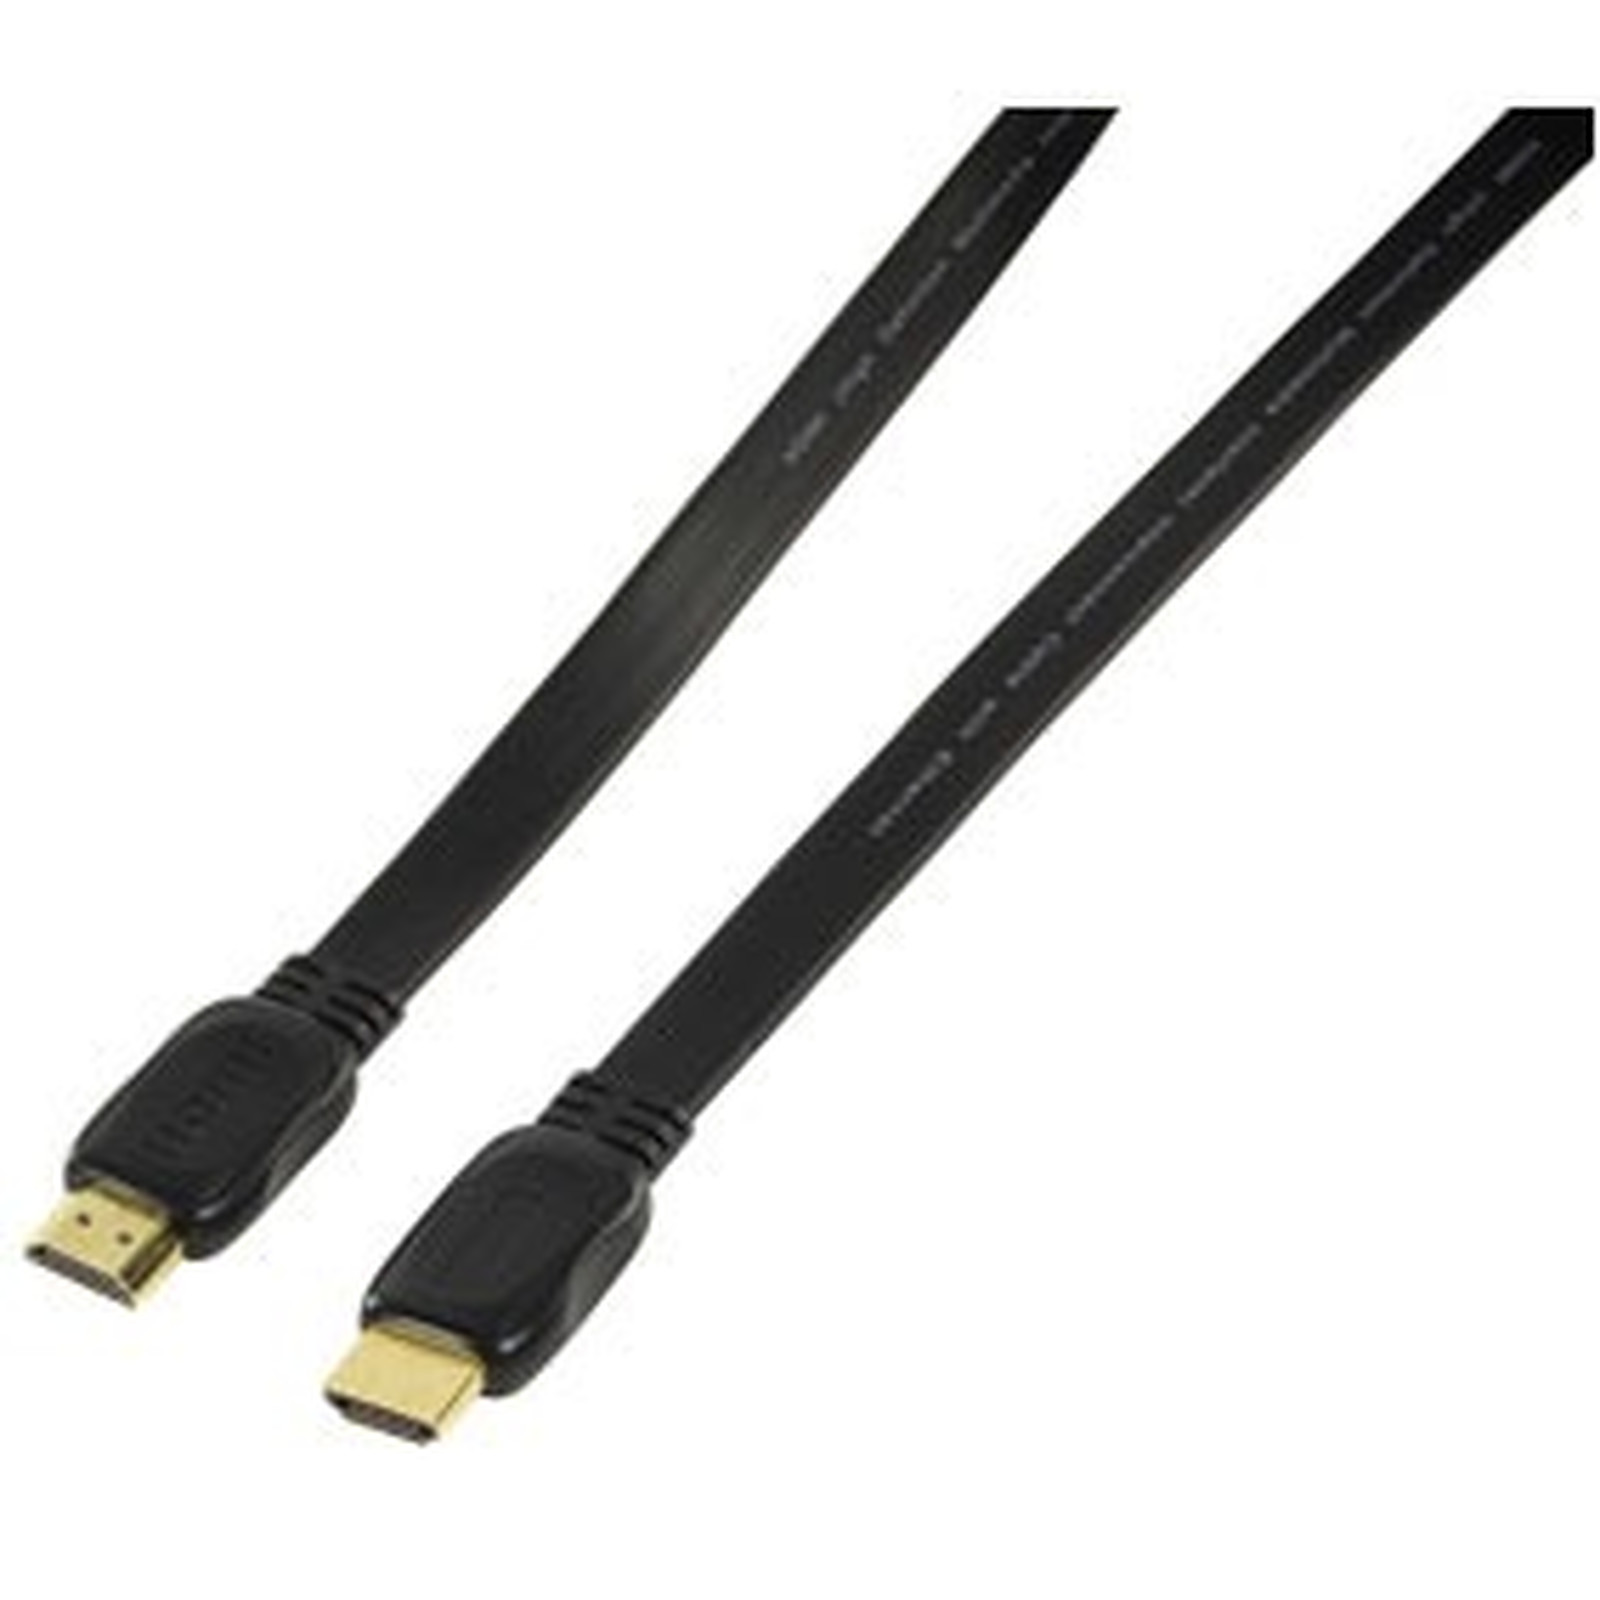 Cable HDMI 1.4 Ethernet Channel male/male (plat, plaque or) - (1 mètre) - HDMI Generique